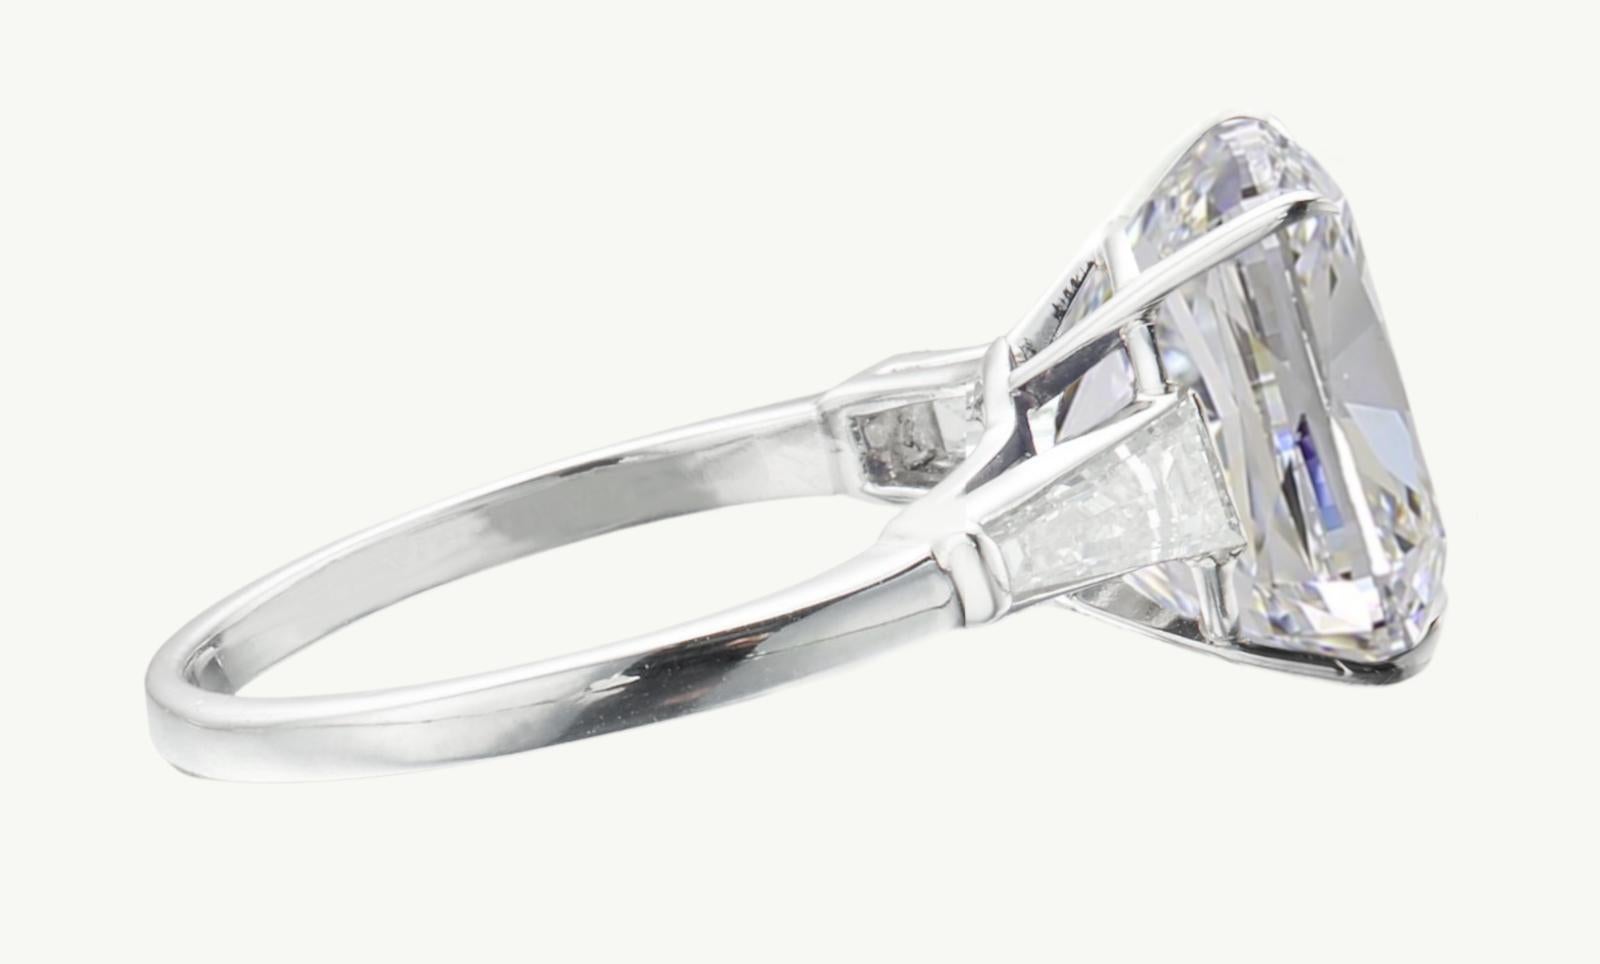 Voici la magnifique bague en platine certifiée GIA de 5,05 carats de diamants taille coussin, accentuée par des diamants baguettes effilés. Cette bague exceptionnelle est ornée d'un captivant diamant de taille coussin, certifié par le très estimé